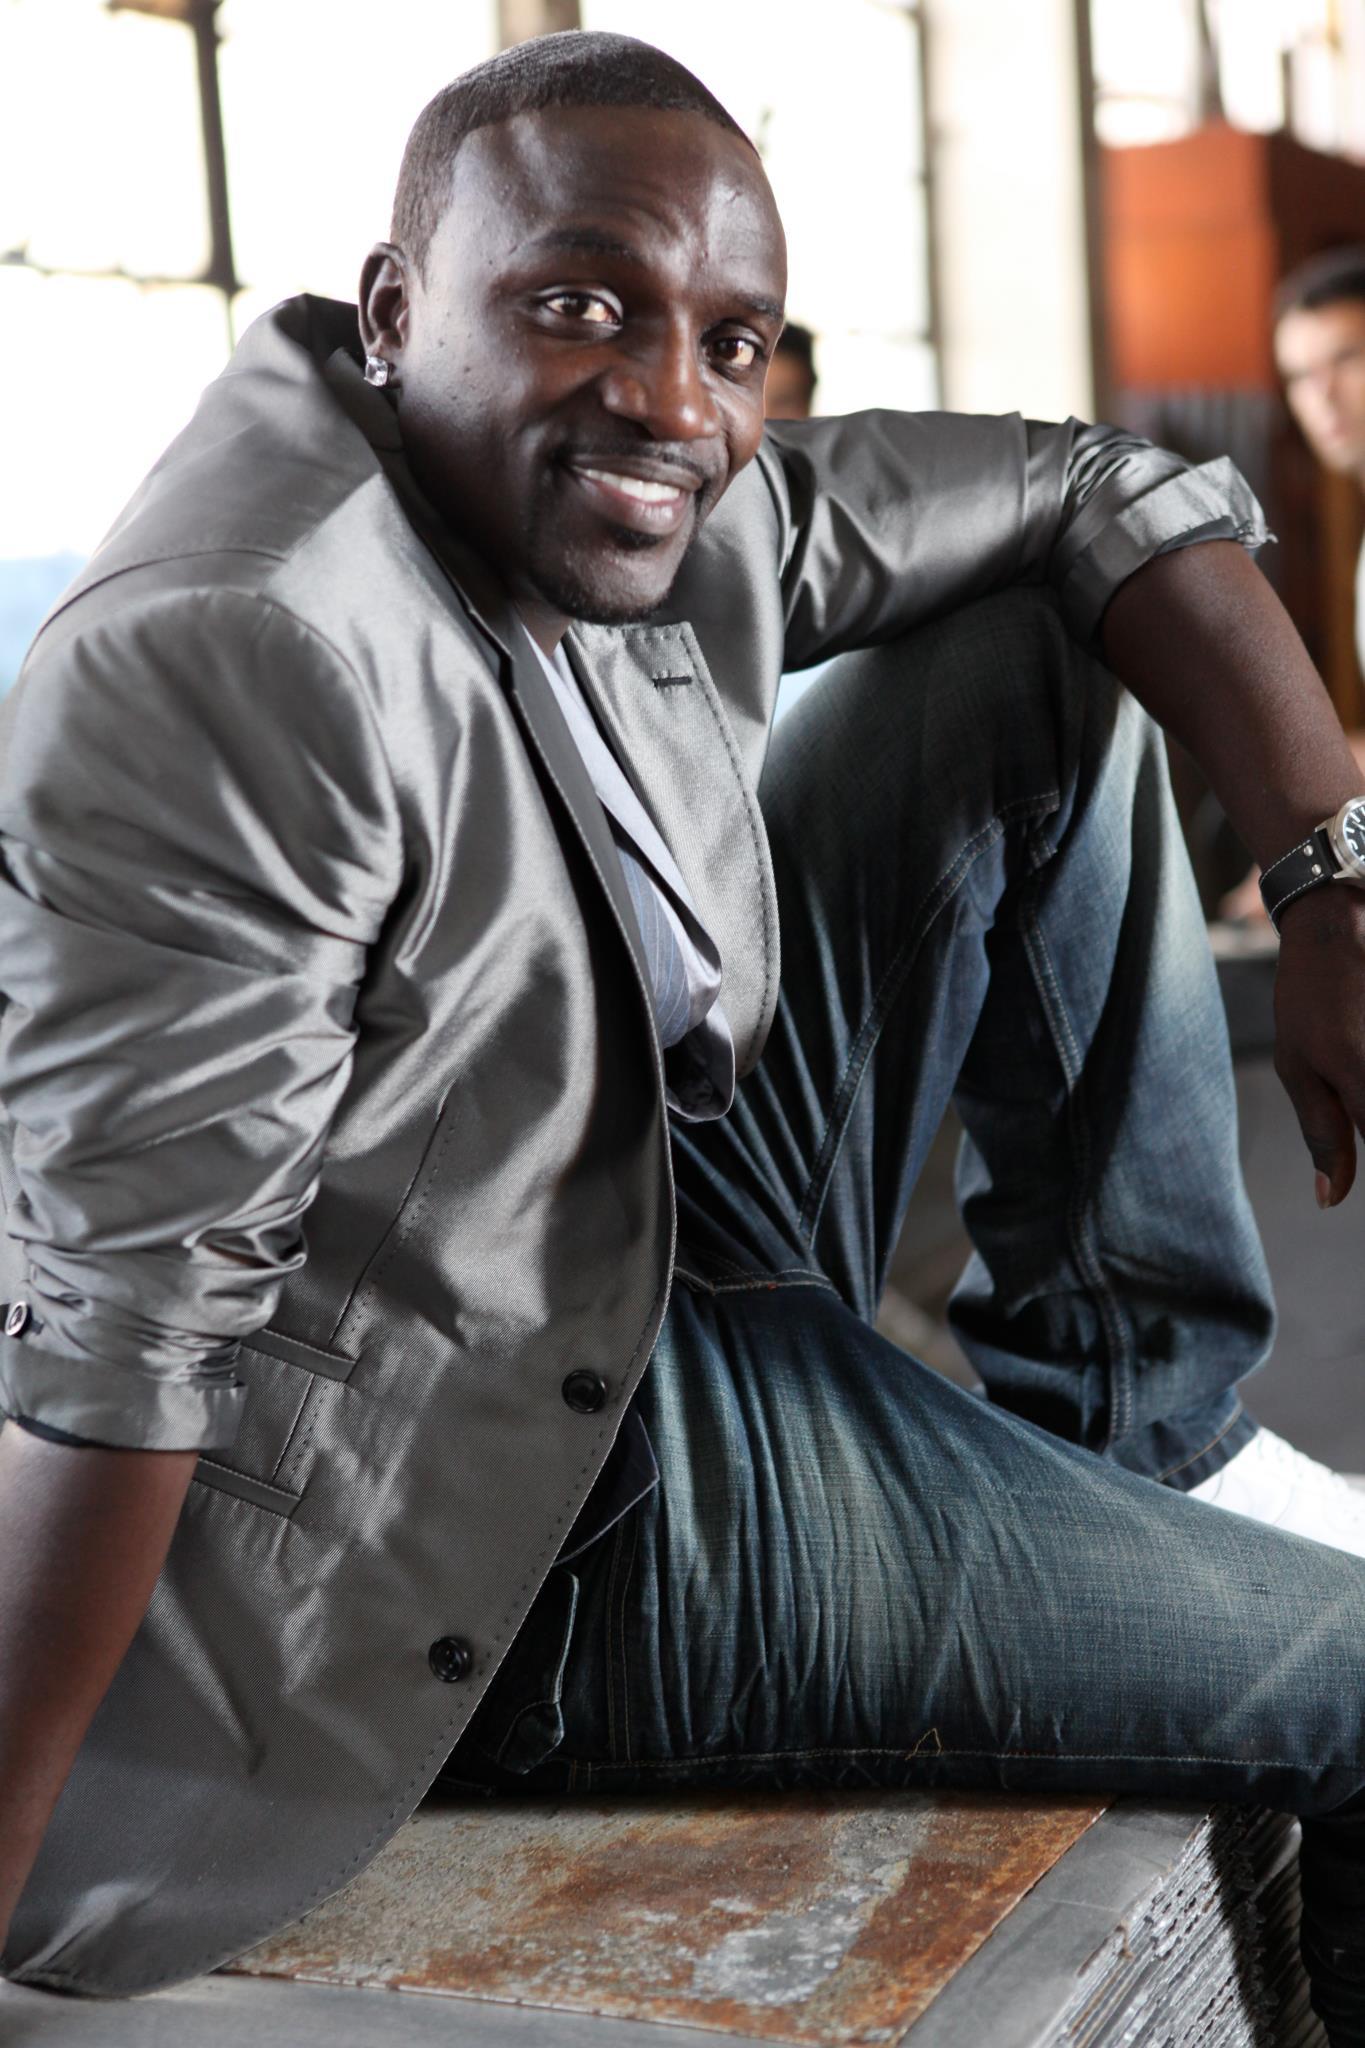 image For > Akon Wallpaper 2012